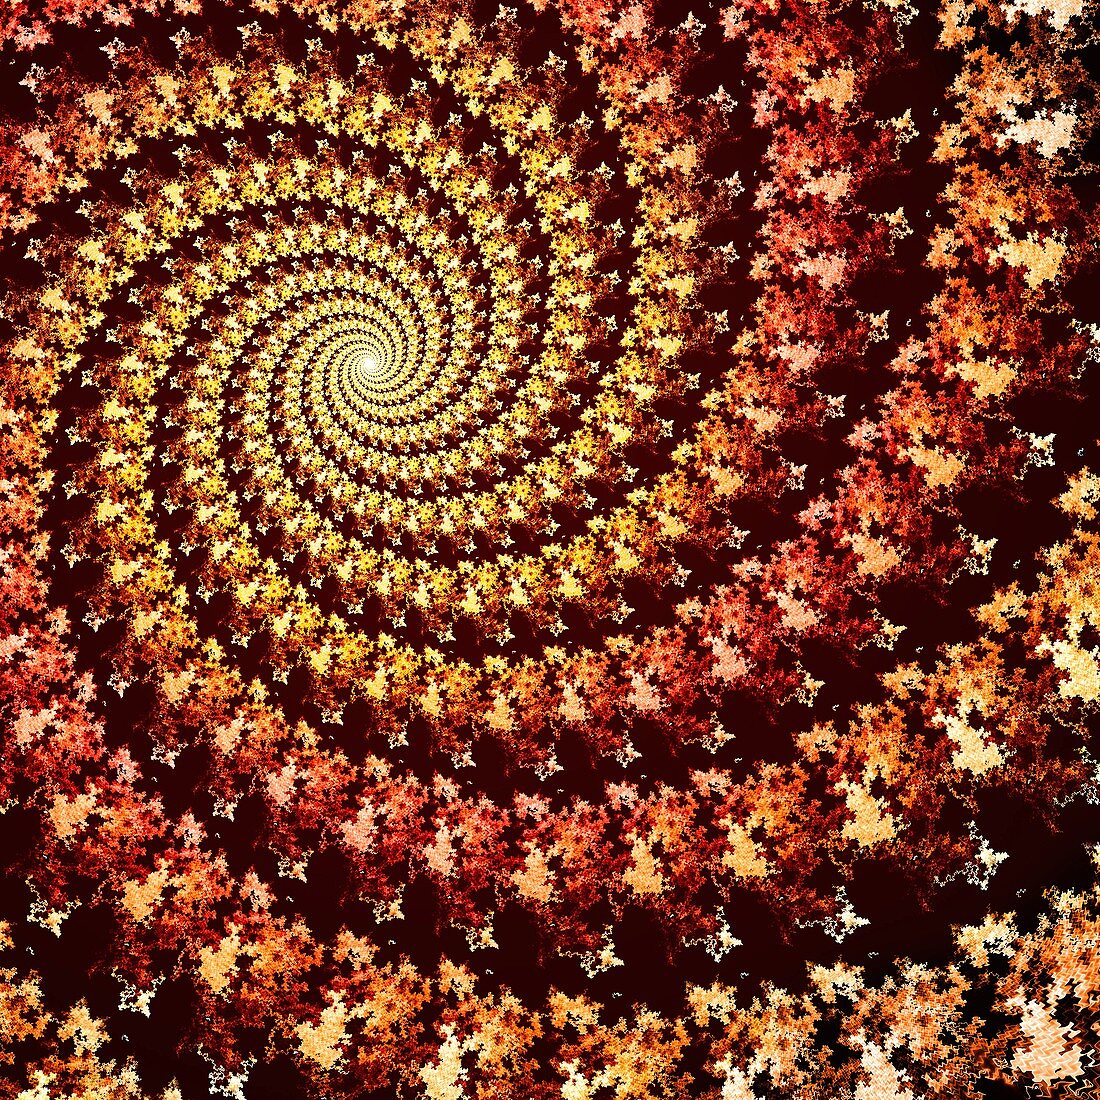 Spiral fractal illustration